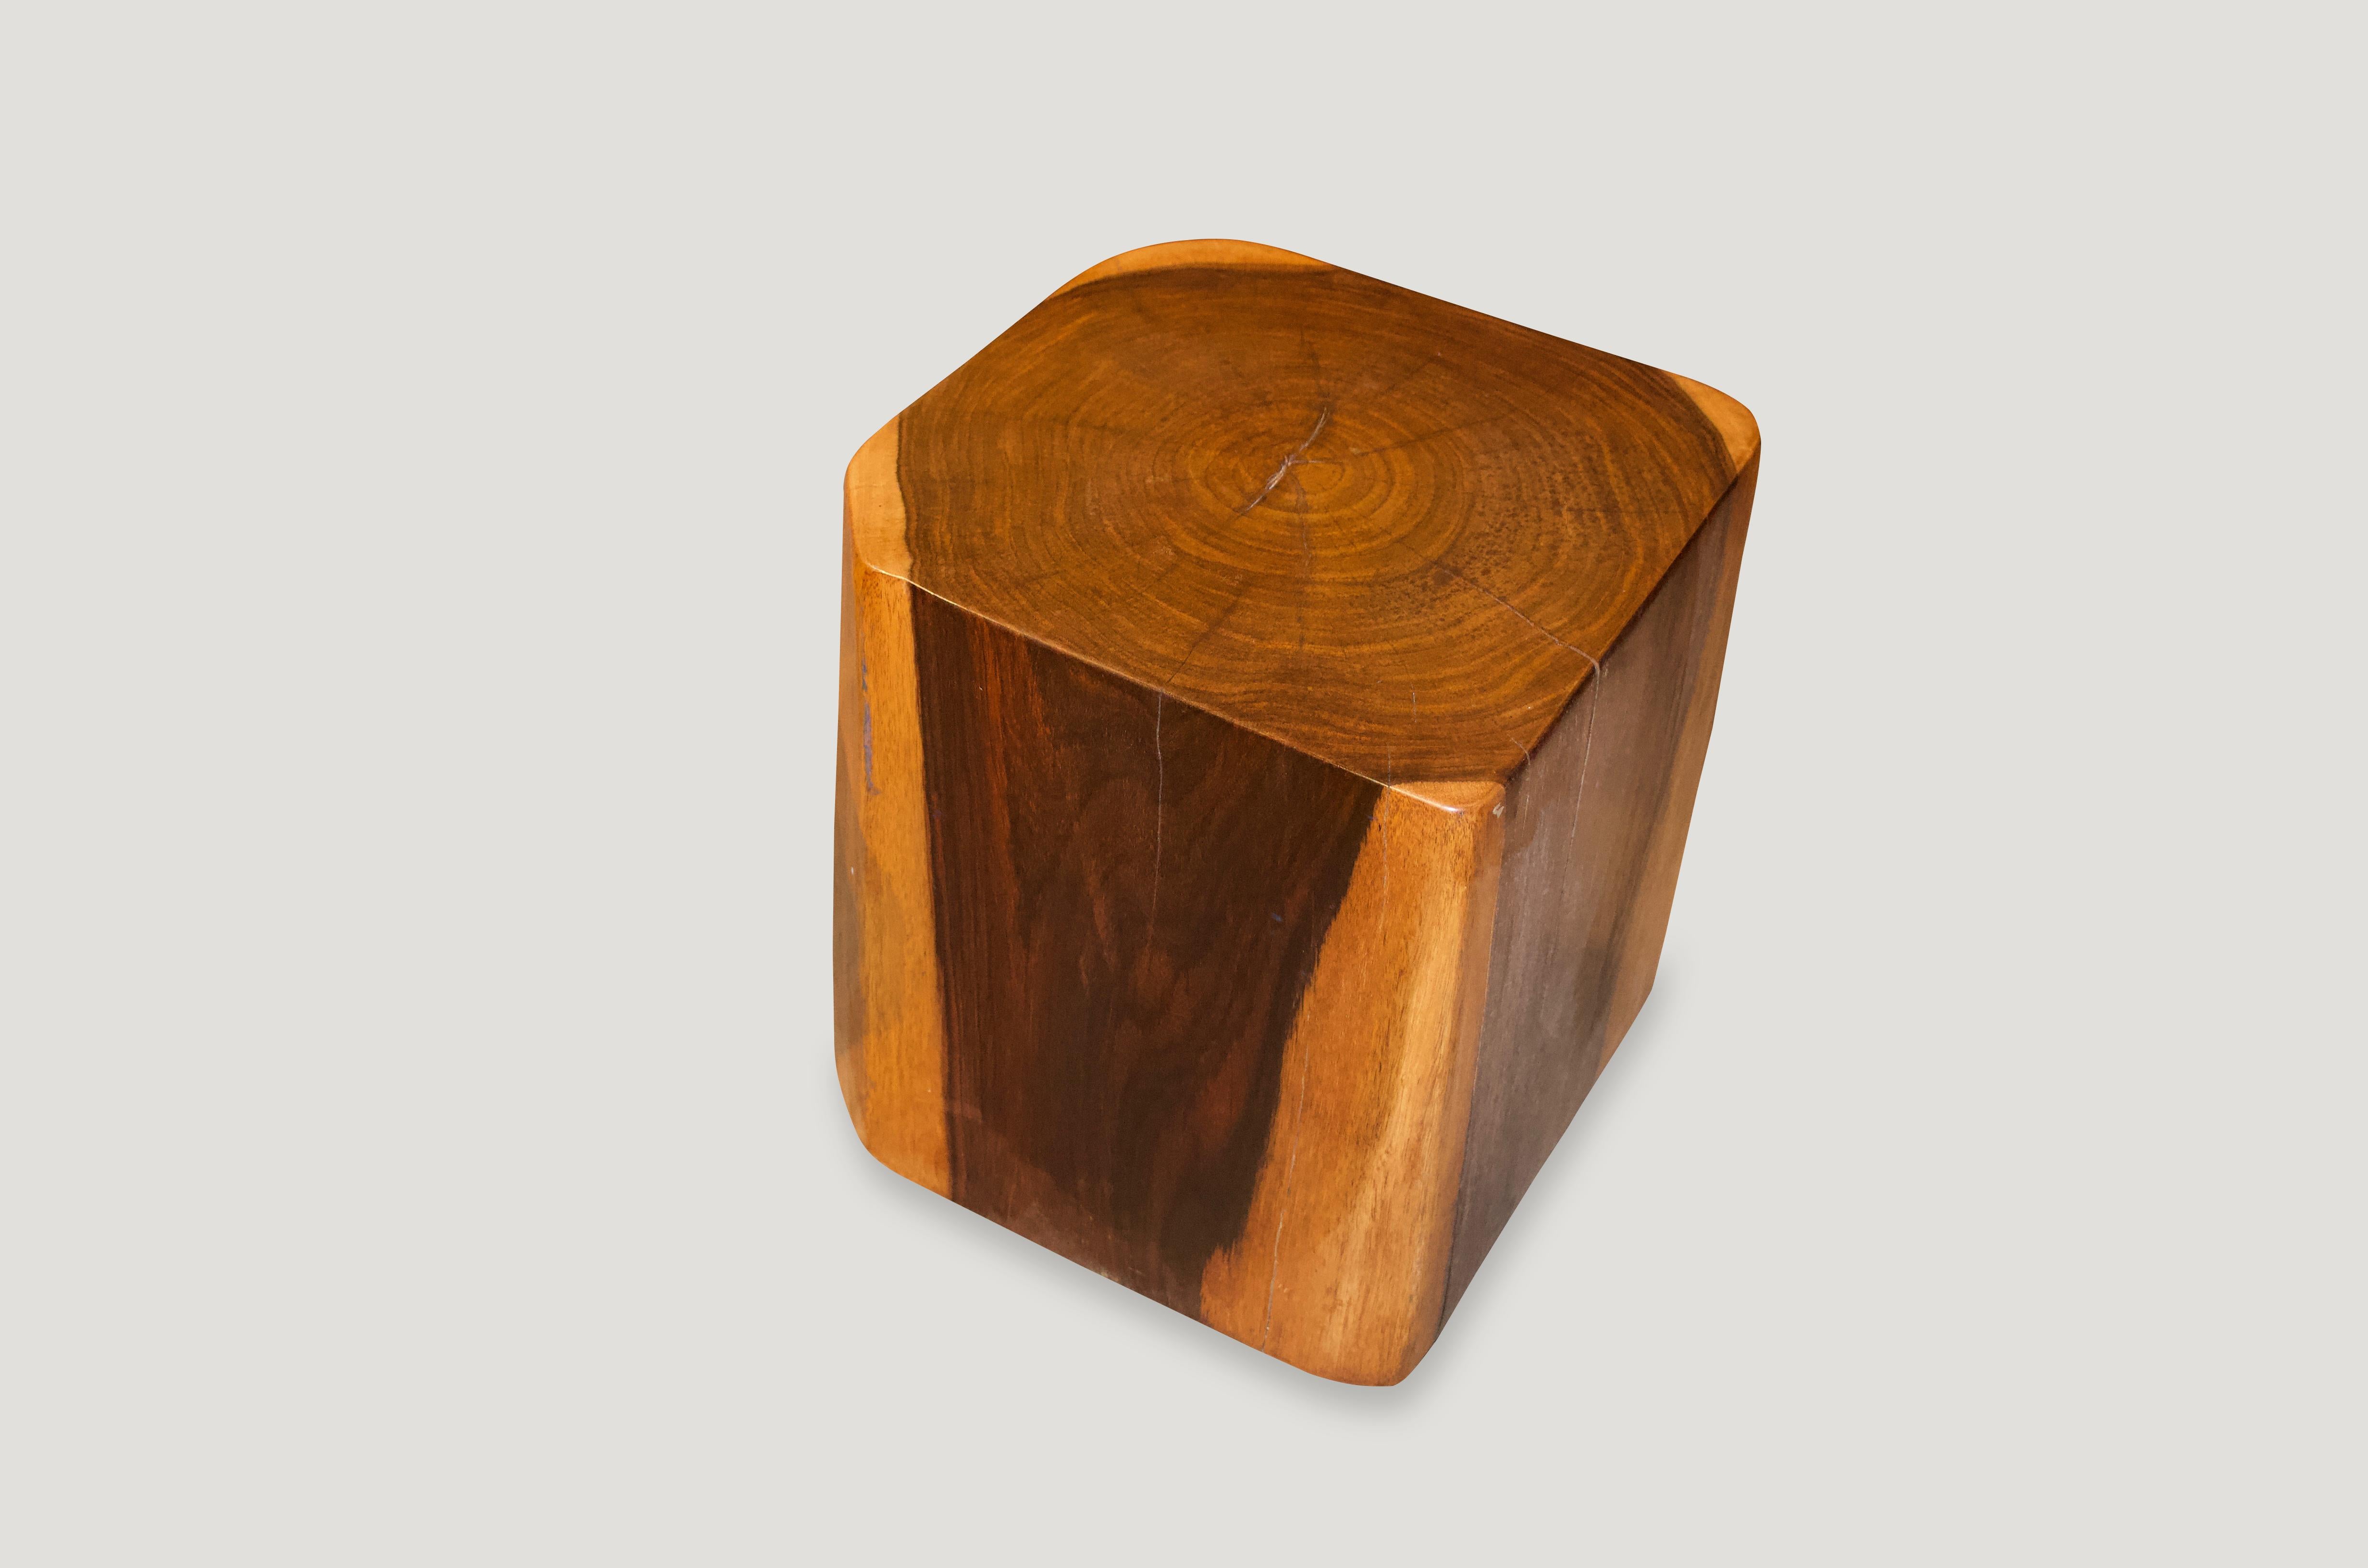 Table d'appoint cubique minimaliste en bois de sono. Nous avons une collection de trois. Le prix en reflète un.

Posséder un original d'Andrianna Shamaris. 

Andrianna Shamaris. Le leader de la conception organique moderne. 